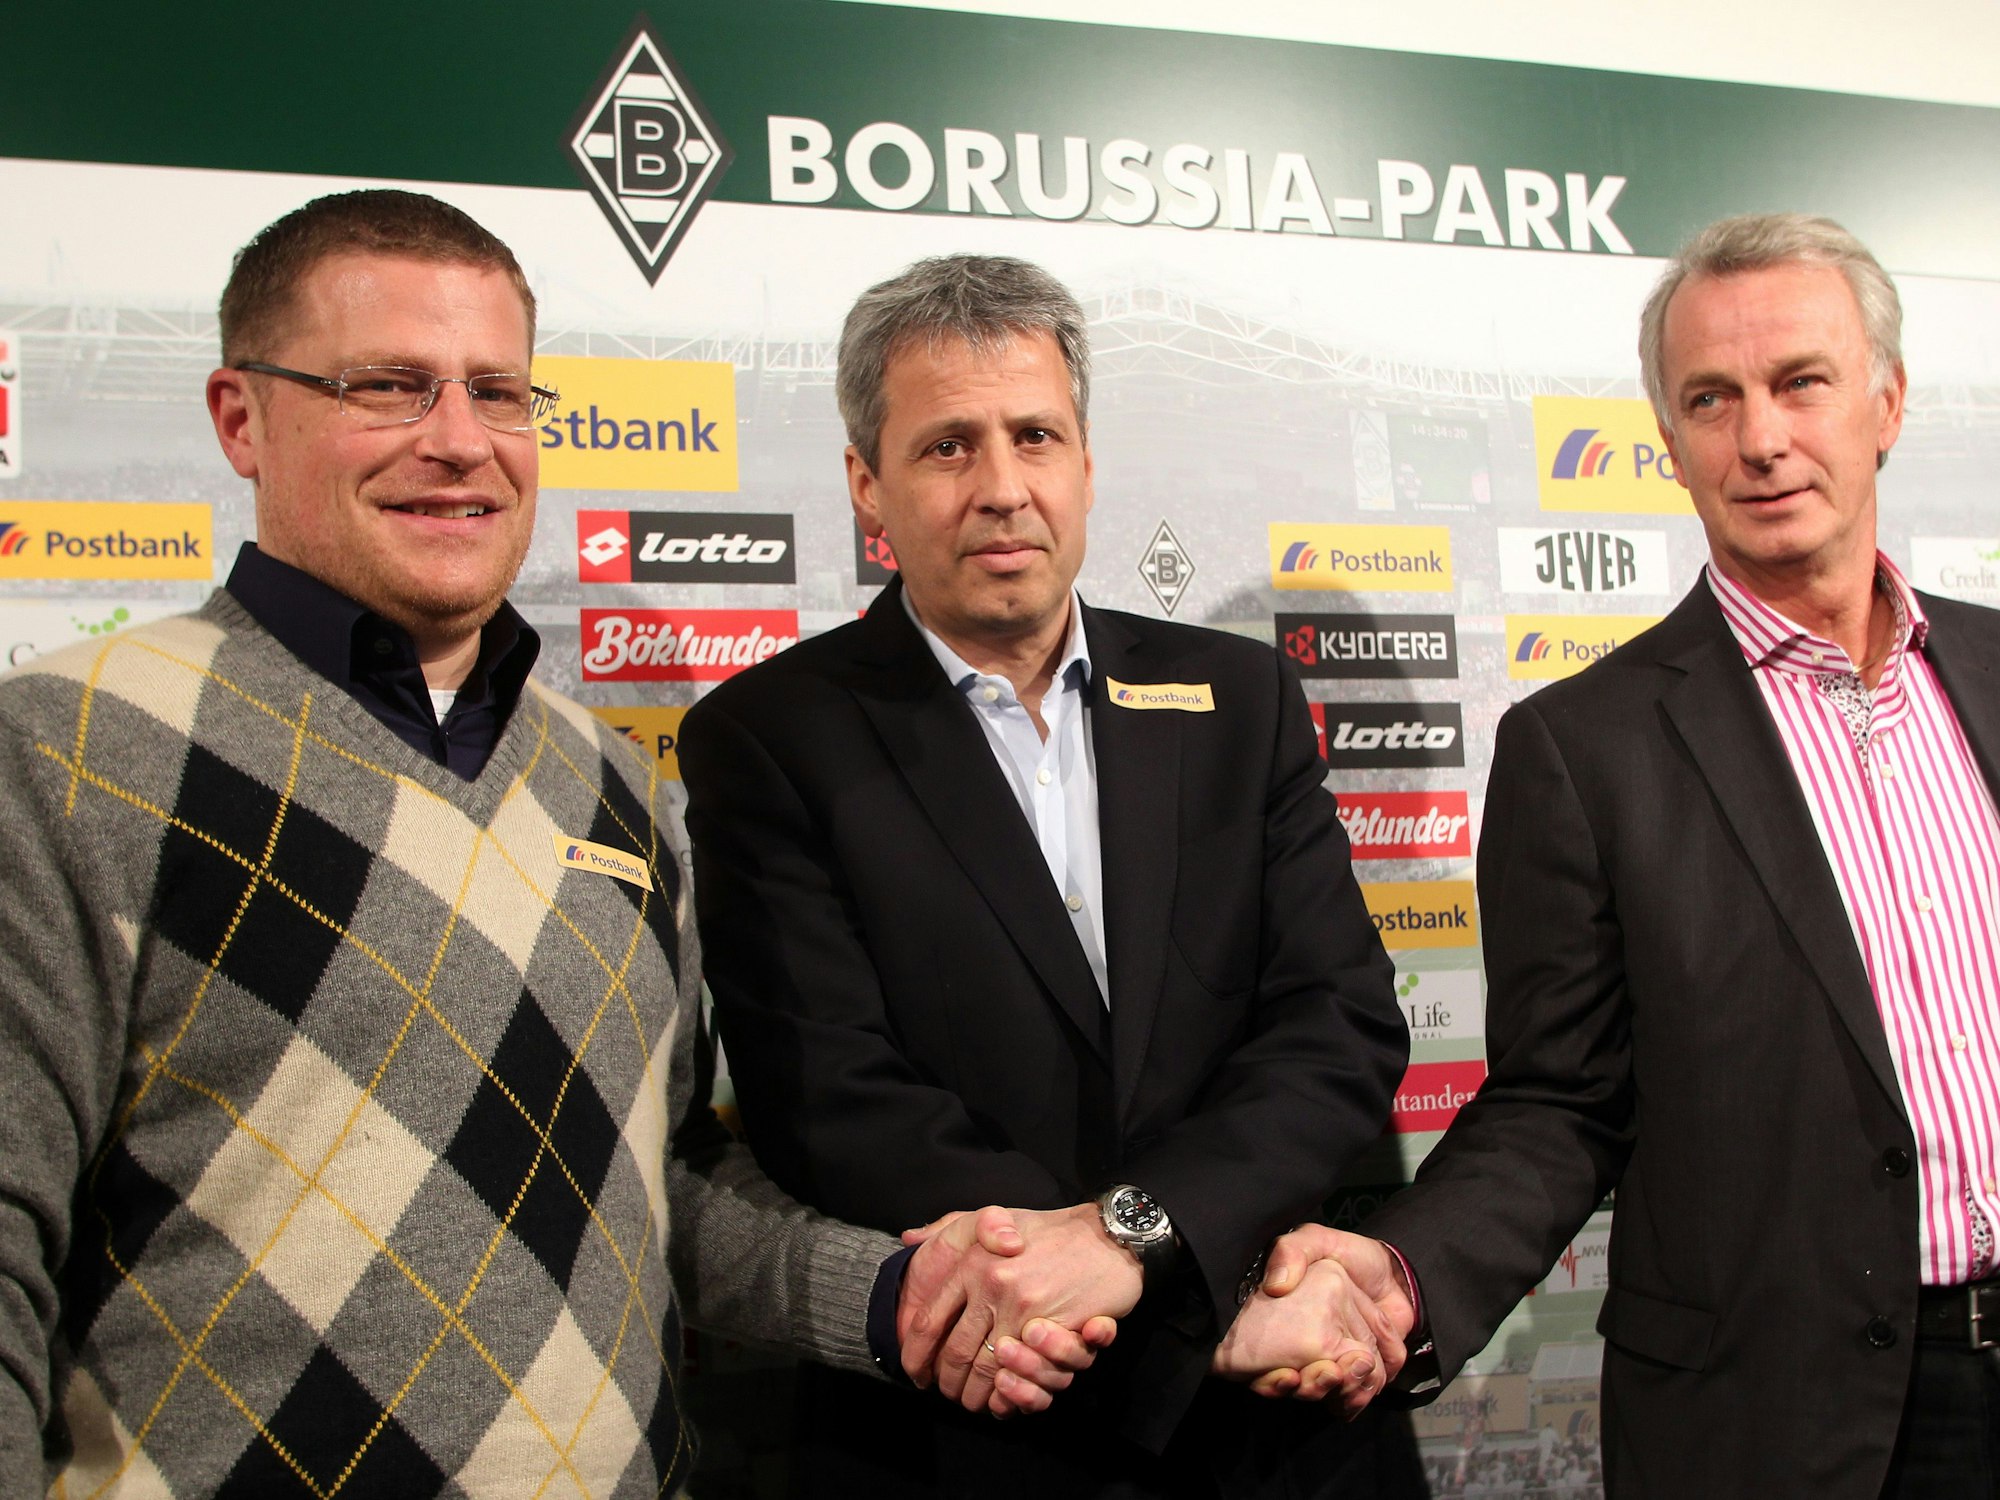 Der Schweizer Lucien Favre, neuer Trainer beim Fußball-Bundesligisten Borussia Mönchengladbach, wird bei einer Pressekonferenz in Mönchengladbach von Gladbachs Vizepräsident Rainer Bonhof und Sportdirektor Max Eberl vorgestellt.